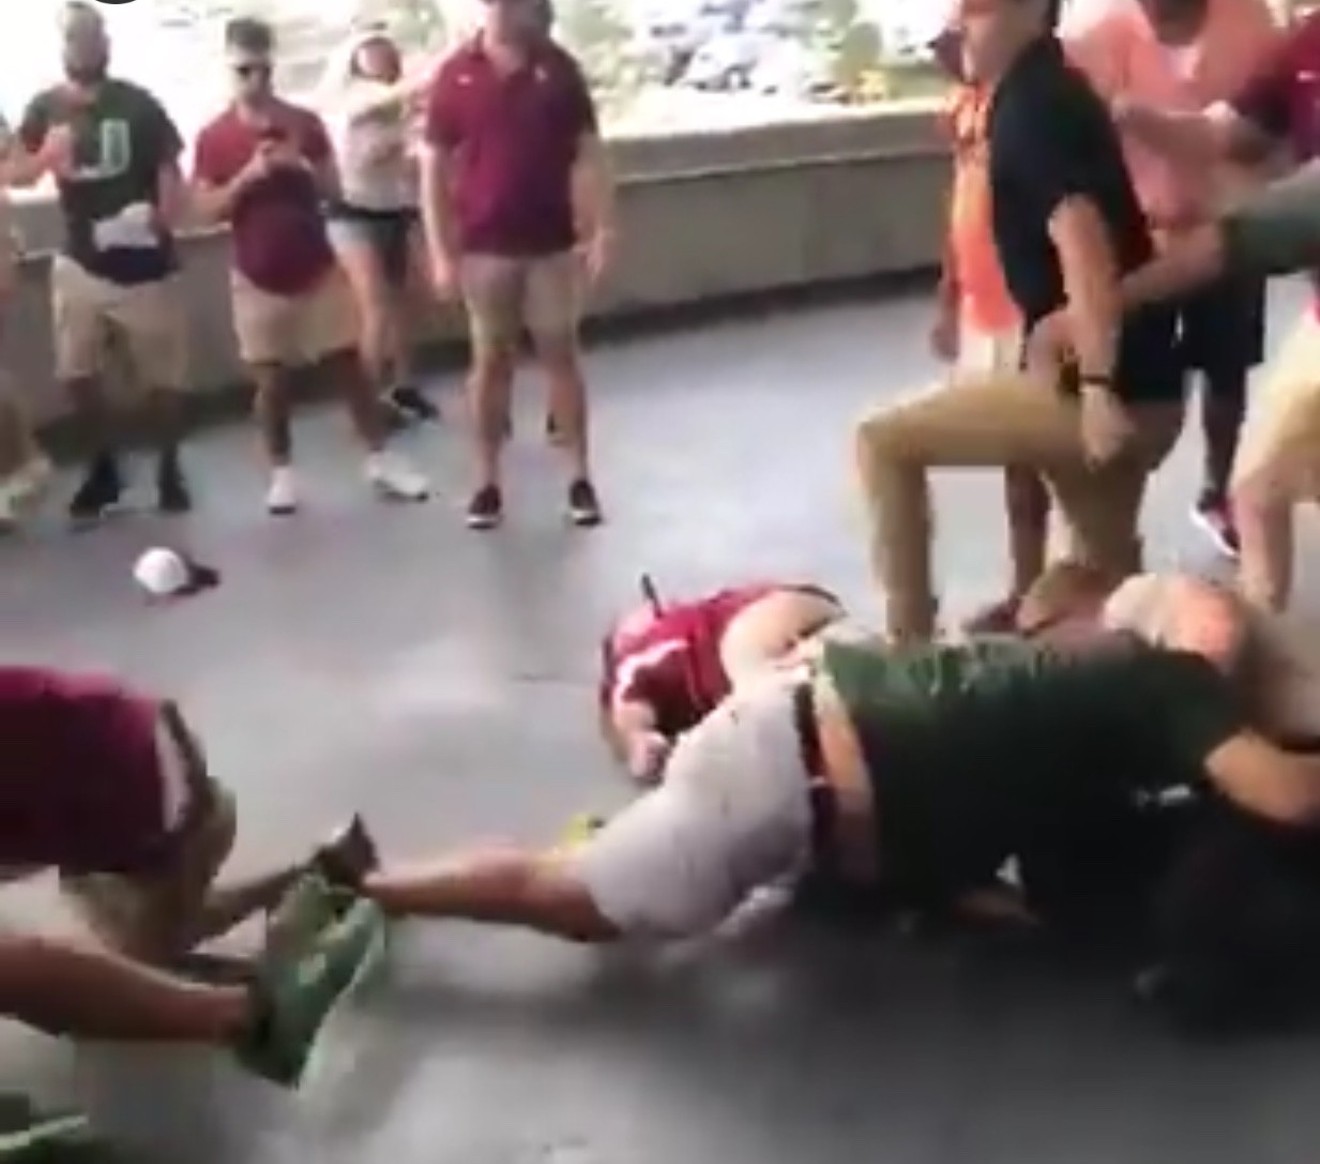 College football fan brawls were in postseason form at FSU-Miami this year.